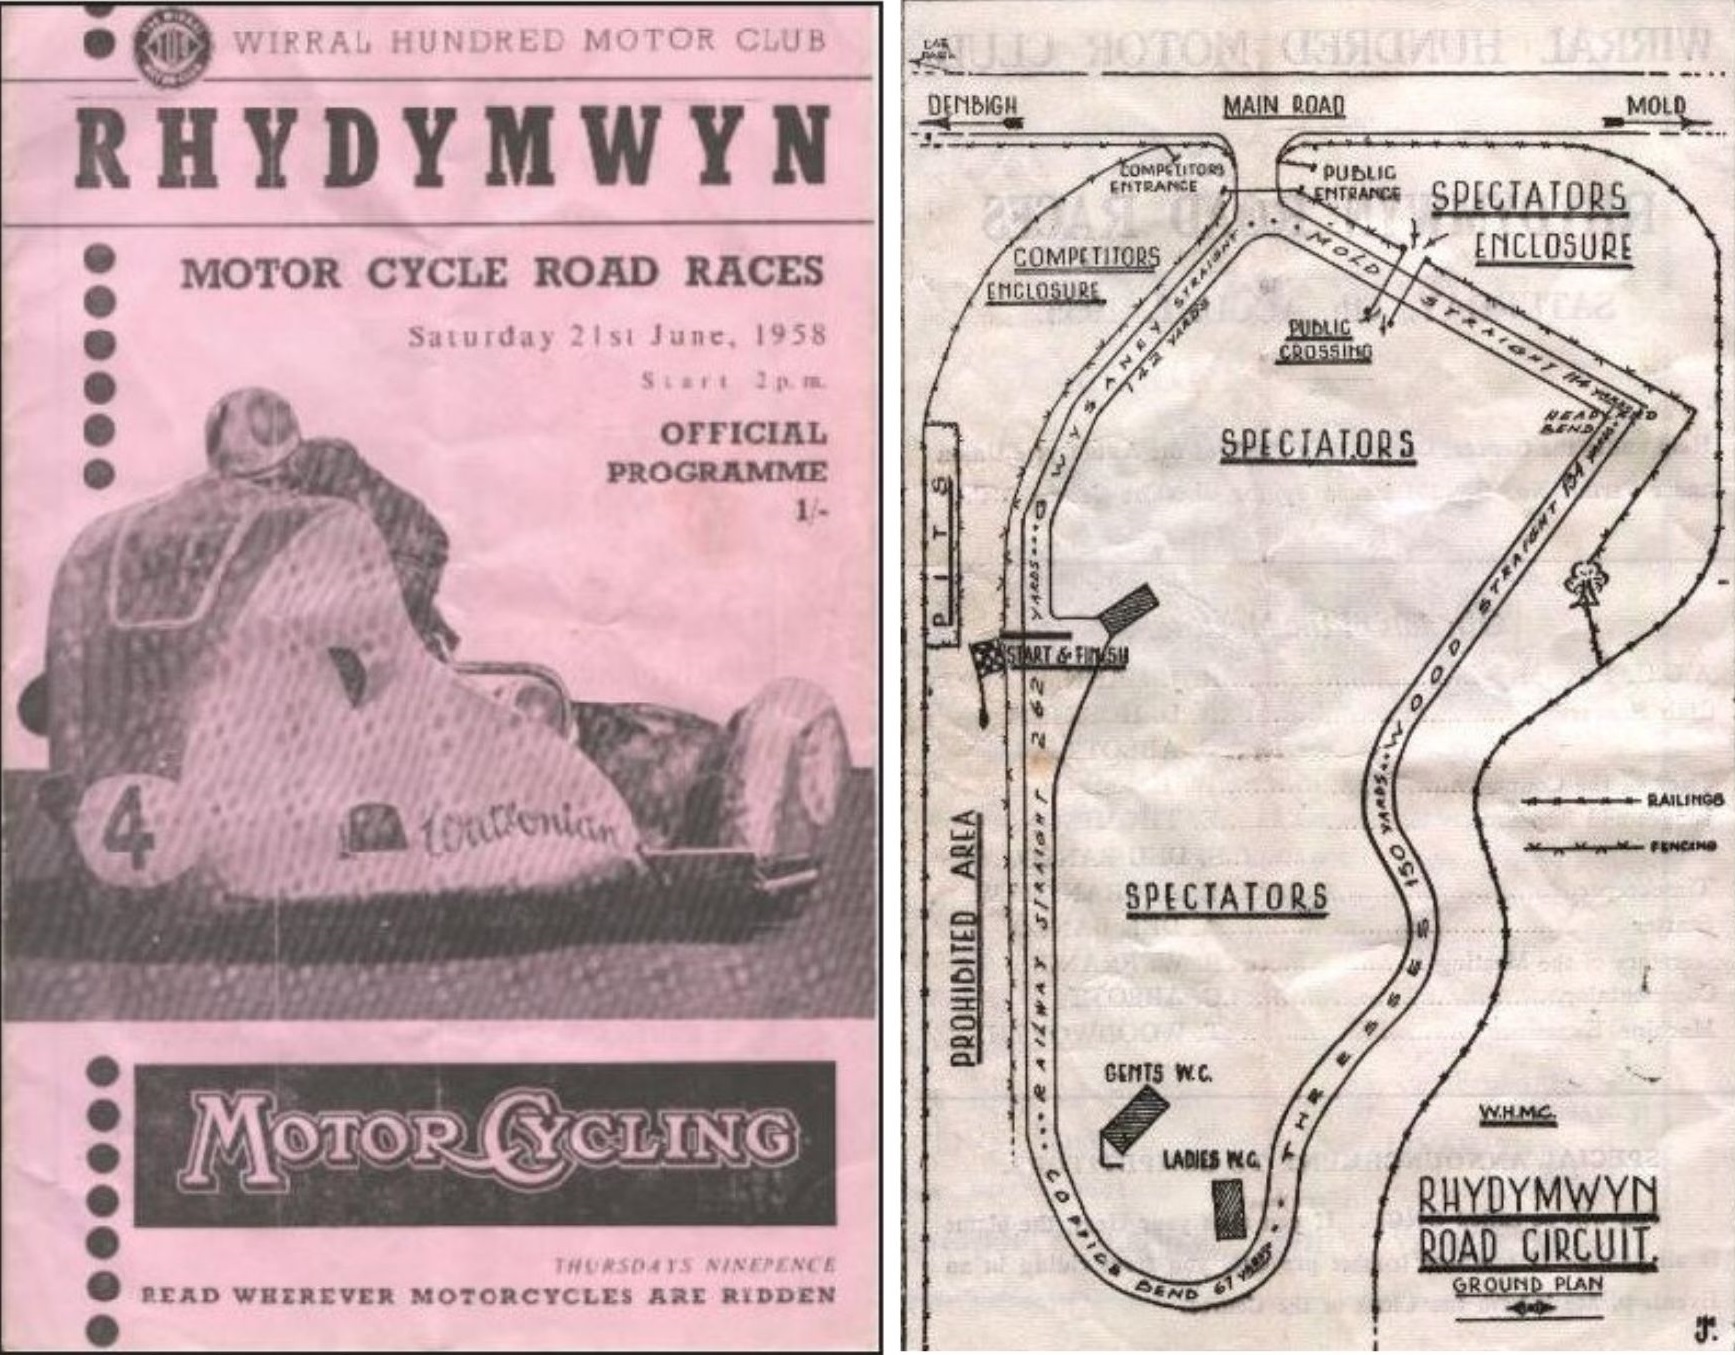 Wirral Hundred Motor Club racing programme at Rhydymwyn.